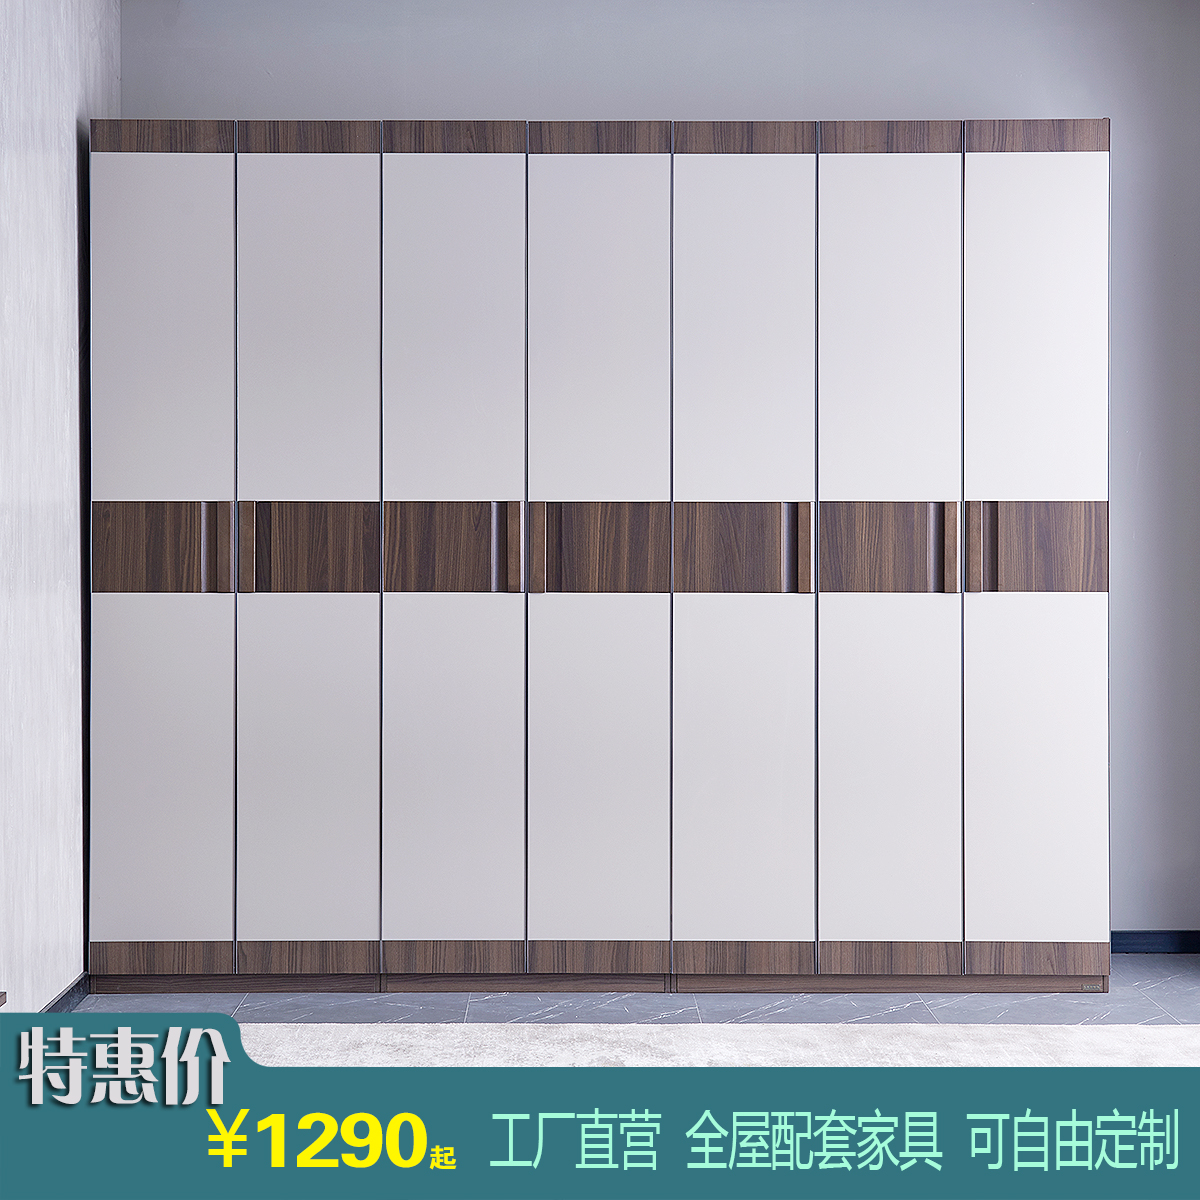 2.4米高组合衣柜平开门实木板式北欧现代组装柜子卧室成套家具